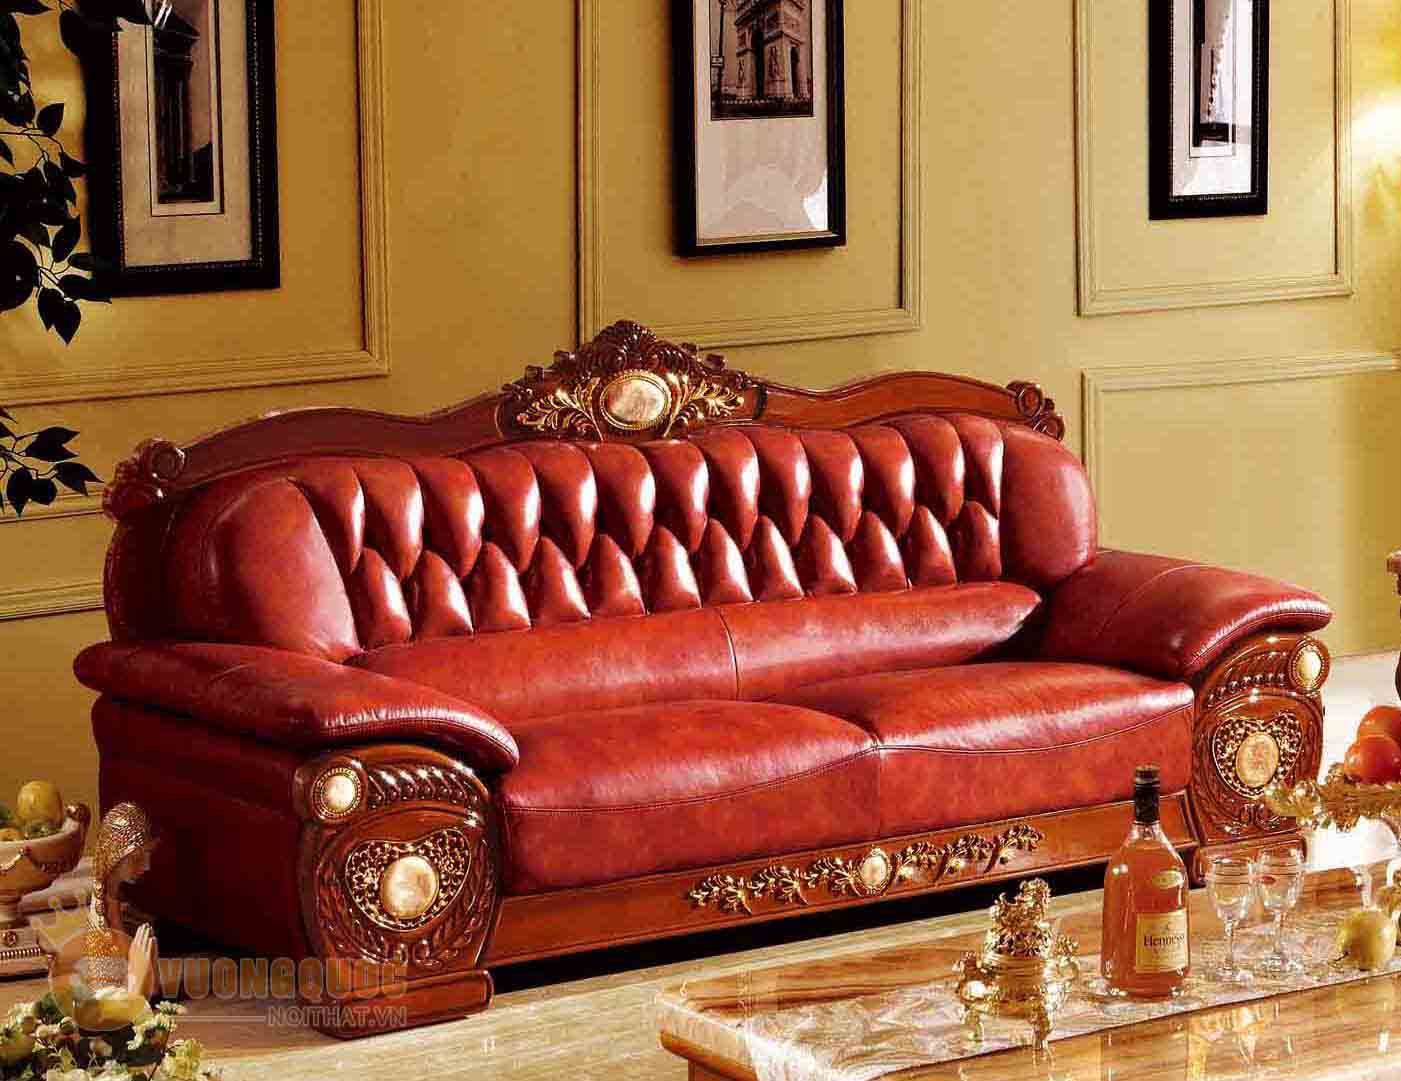 Ghế sofa phòng khách phong cách Châu Âu GDW306C-R305C